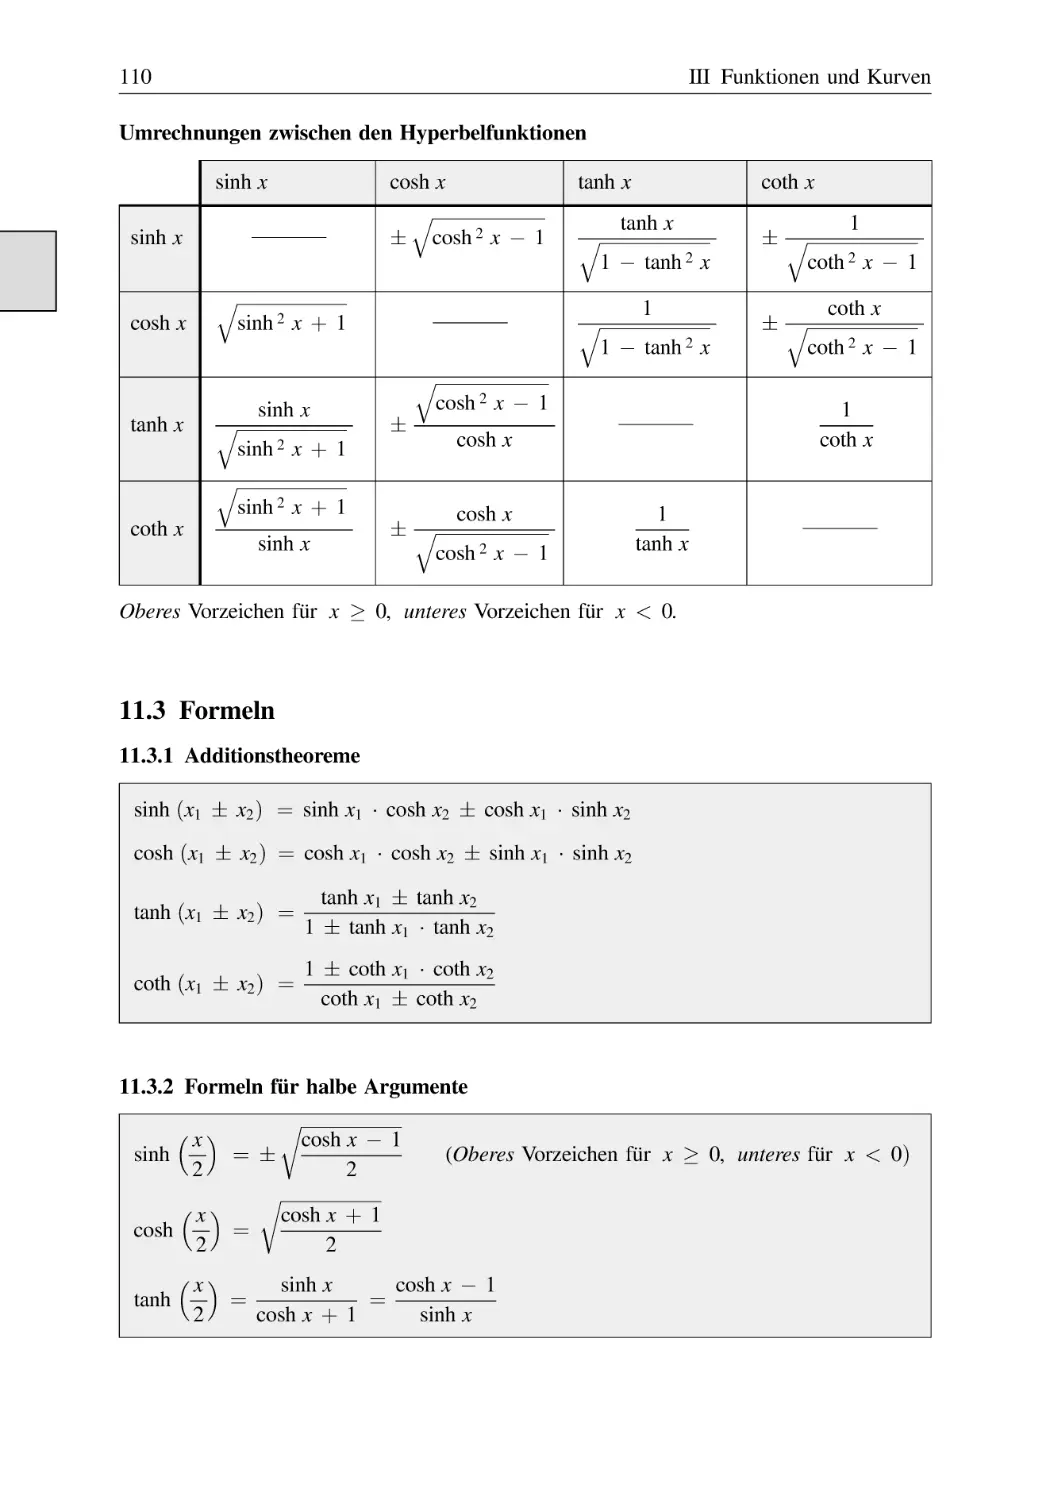 11.3 Formeln
11.3.1 Additionstheoreme
11.3.2 Formeln für halbe Argumente